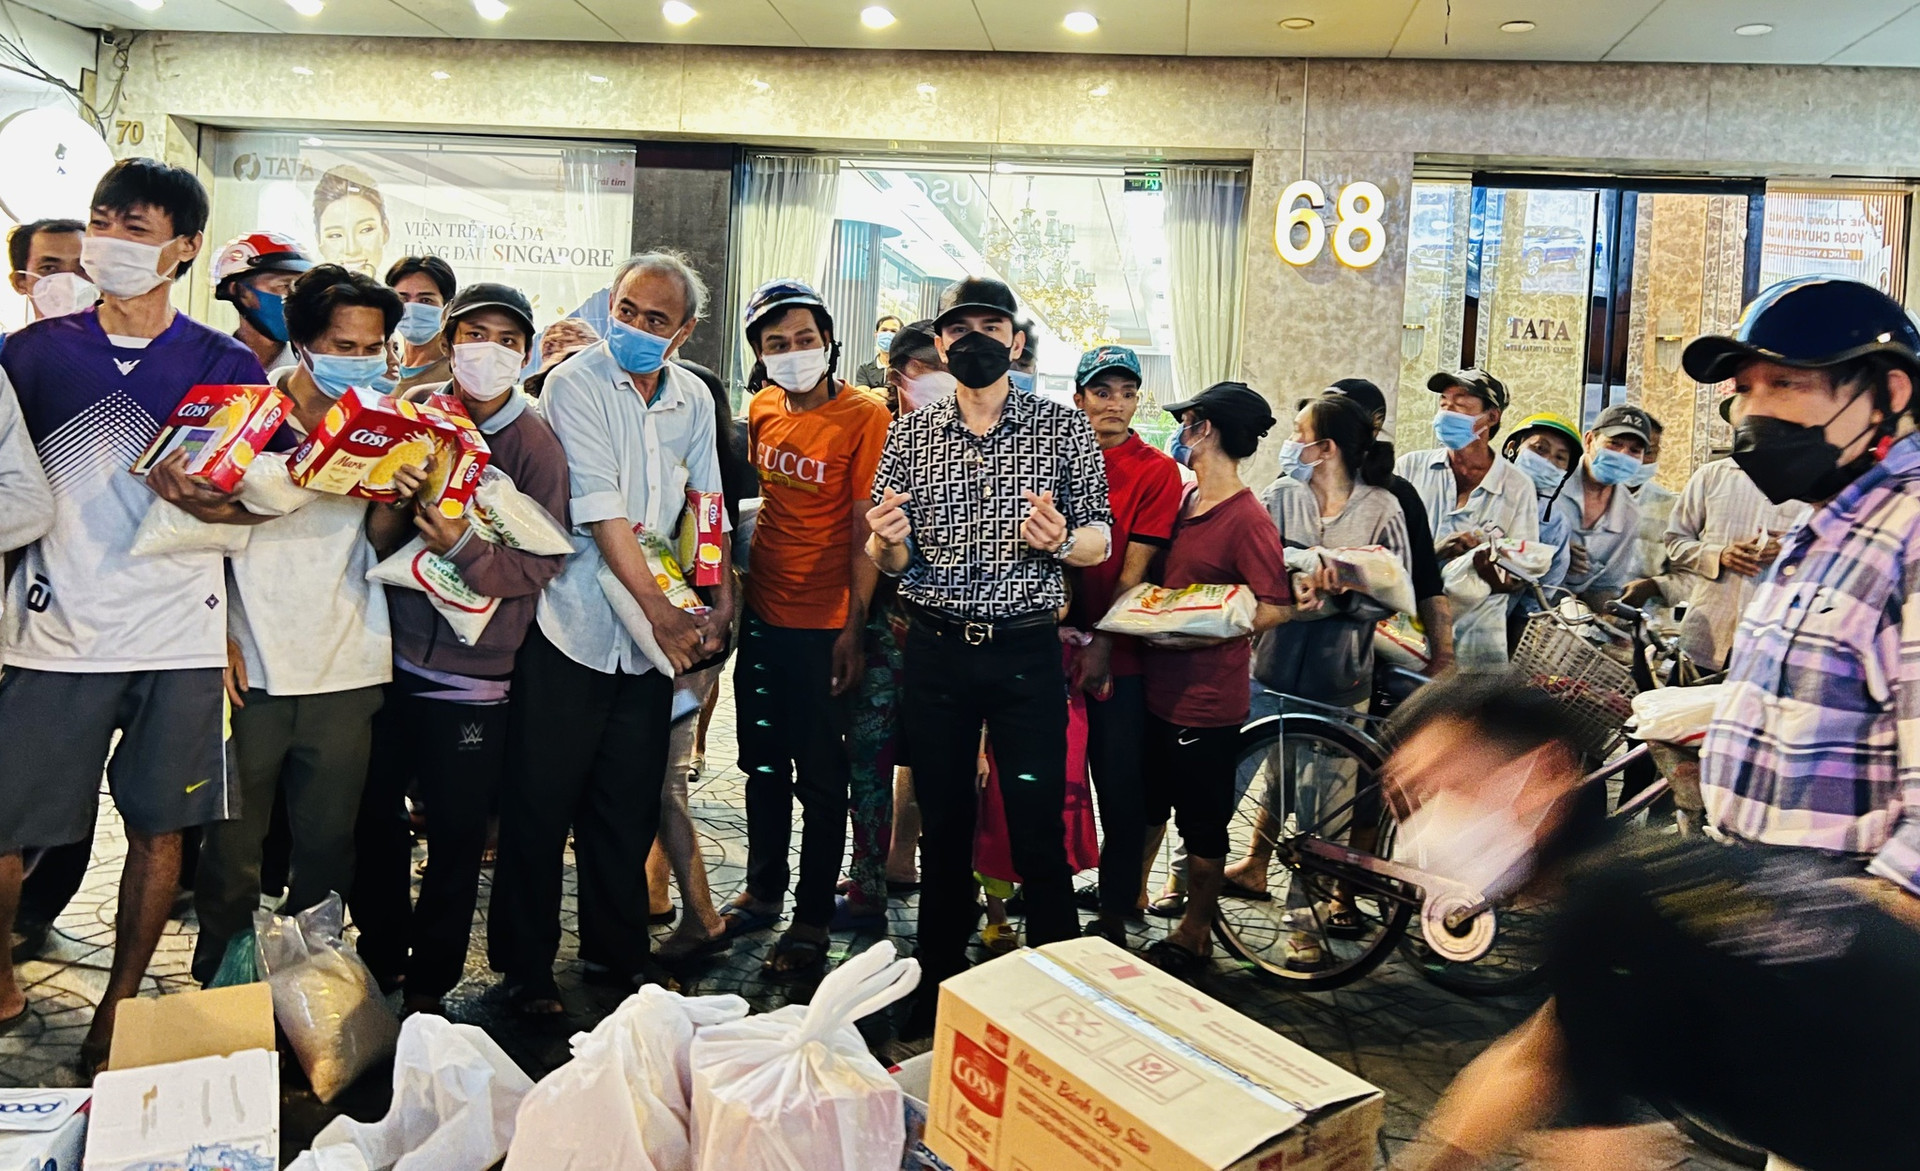 Đan Trường, Trung Quang trao quà cho người nghèo trước khi mang Tết Việt đến với kiều bào - ảnh 2